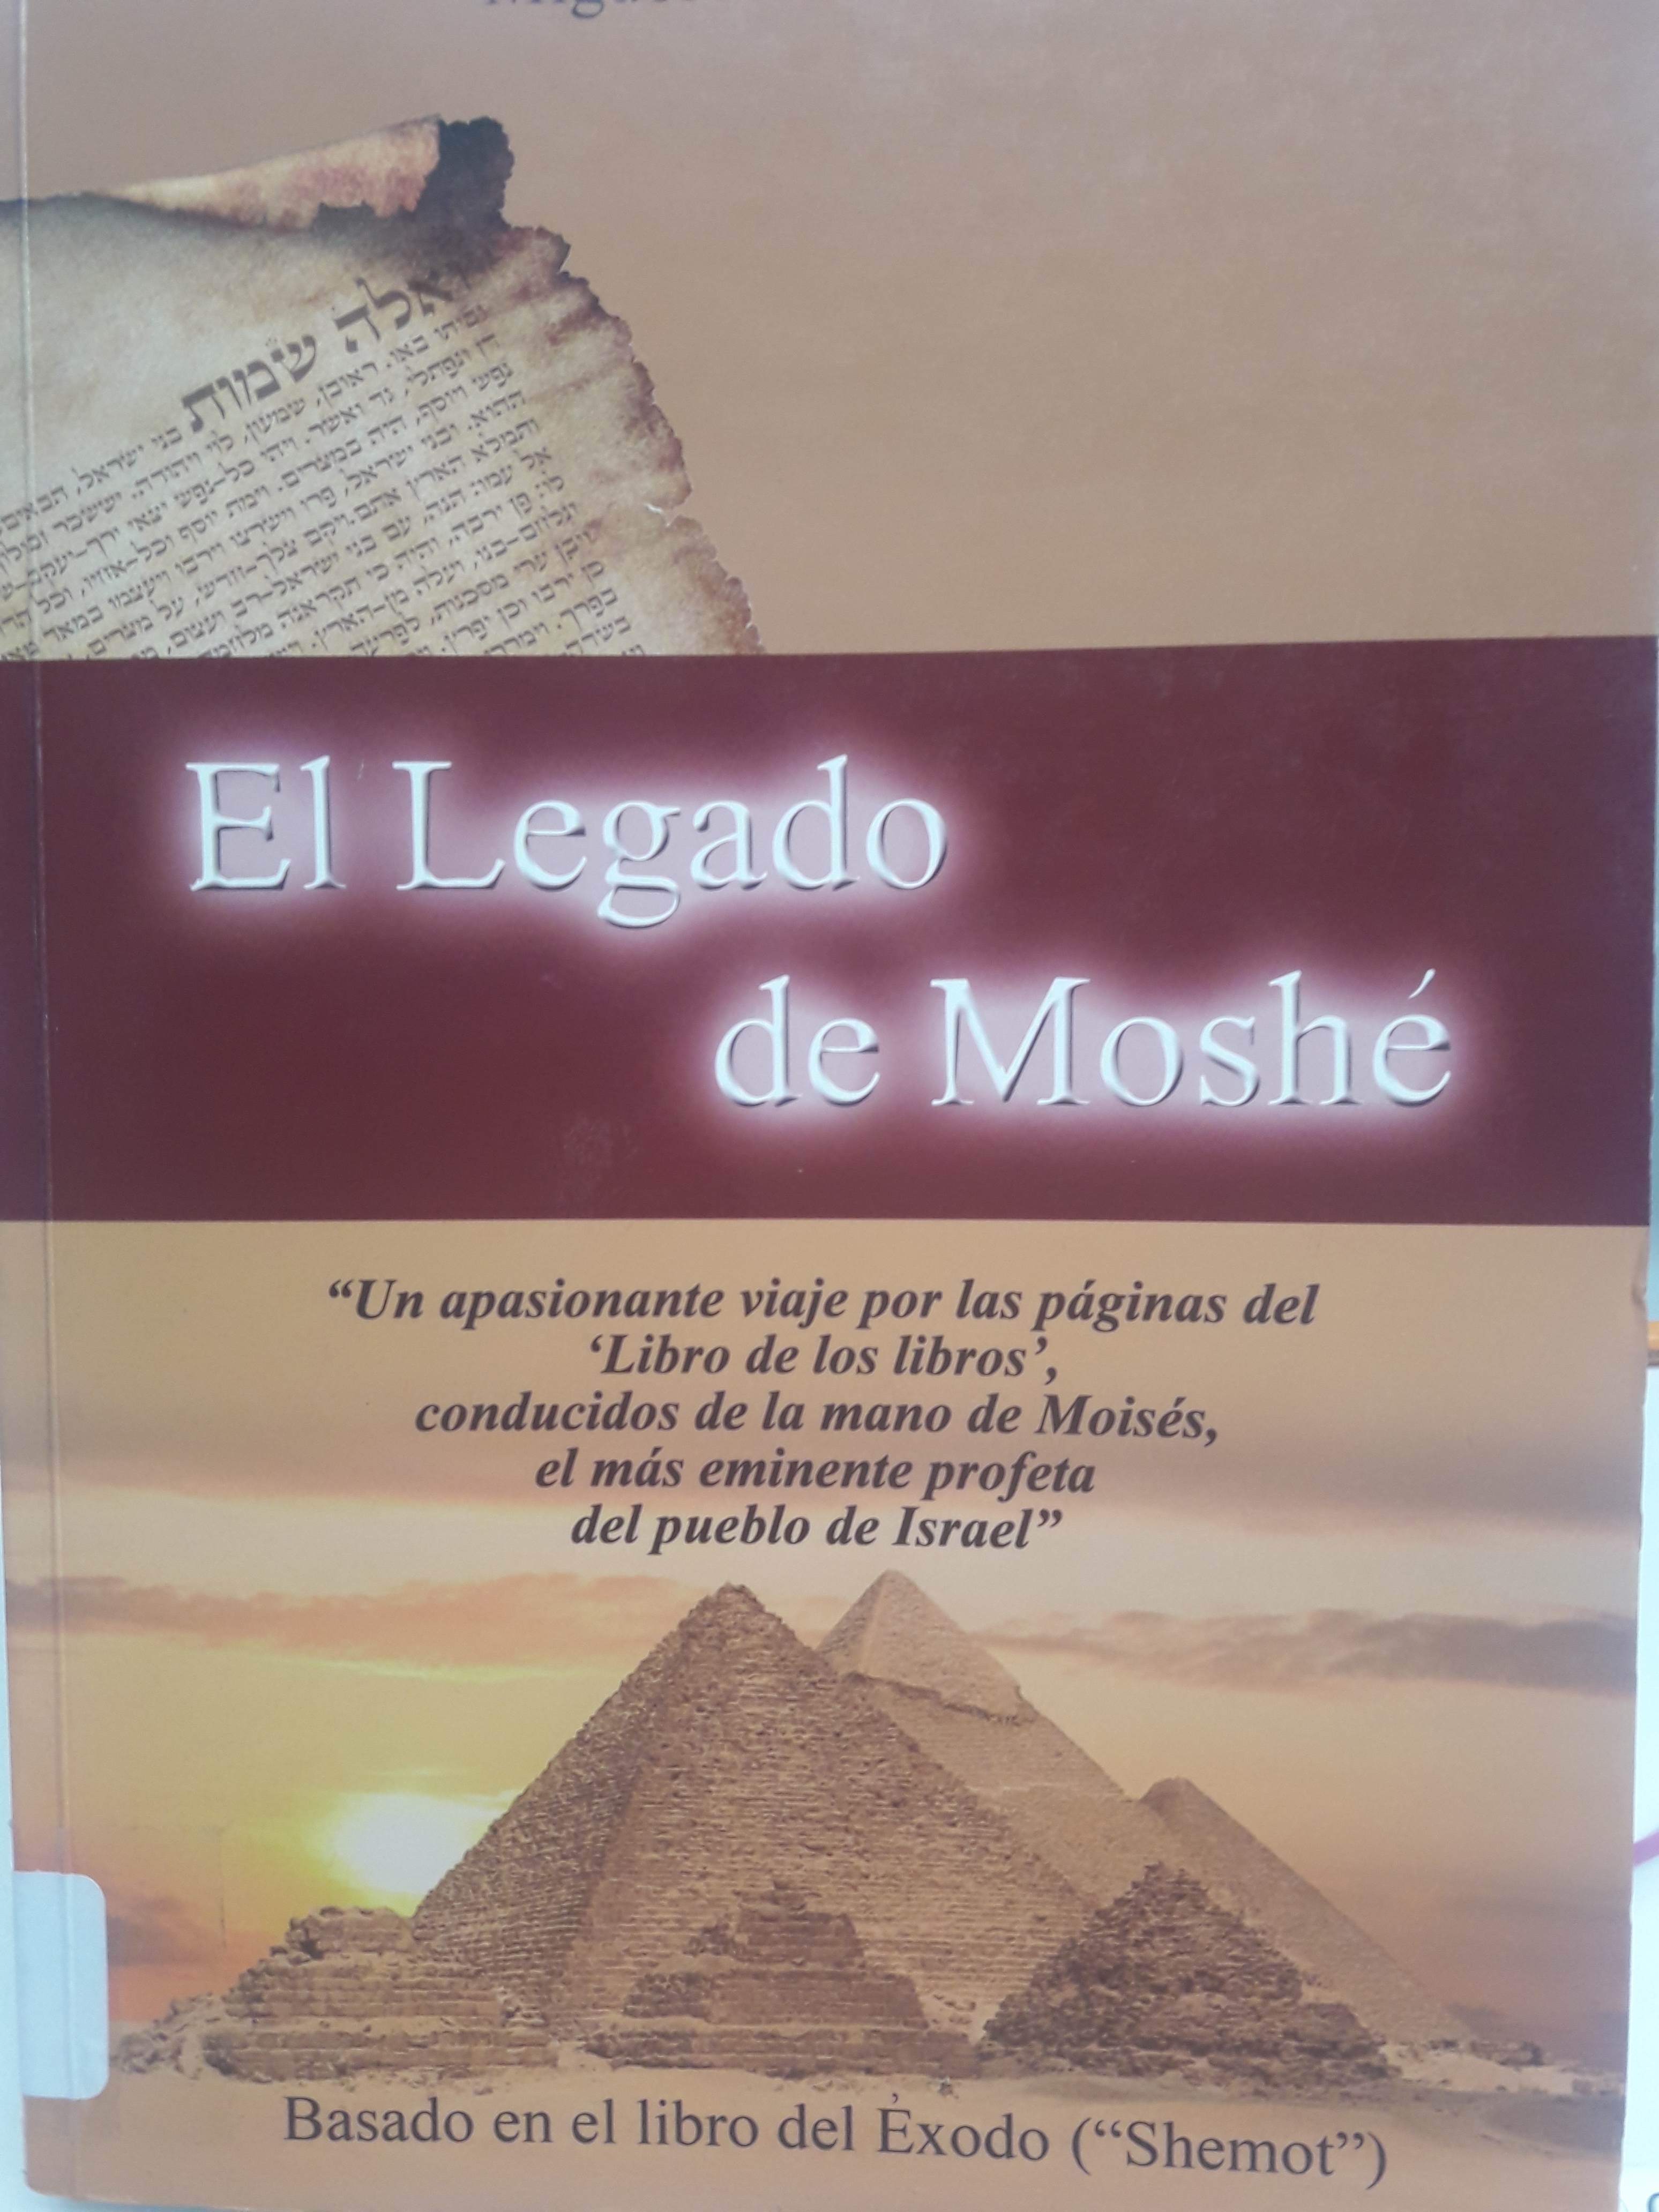 El legado de Moshé